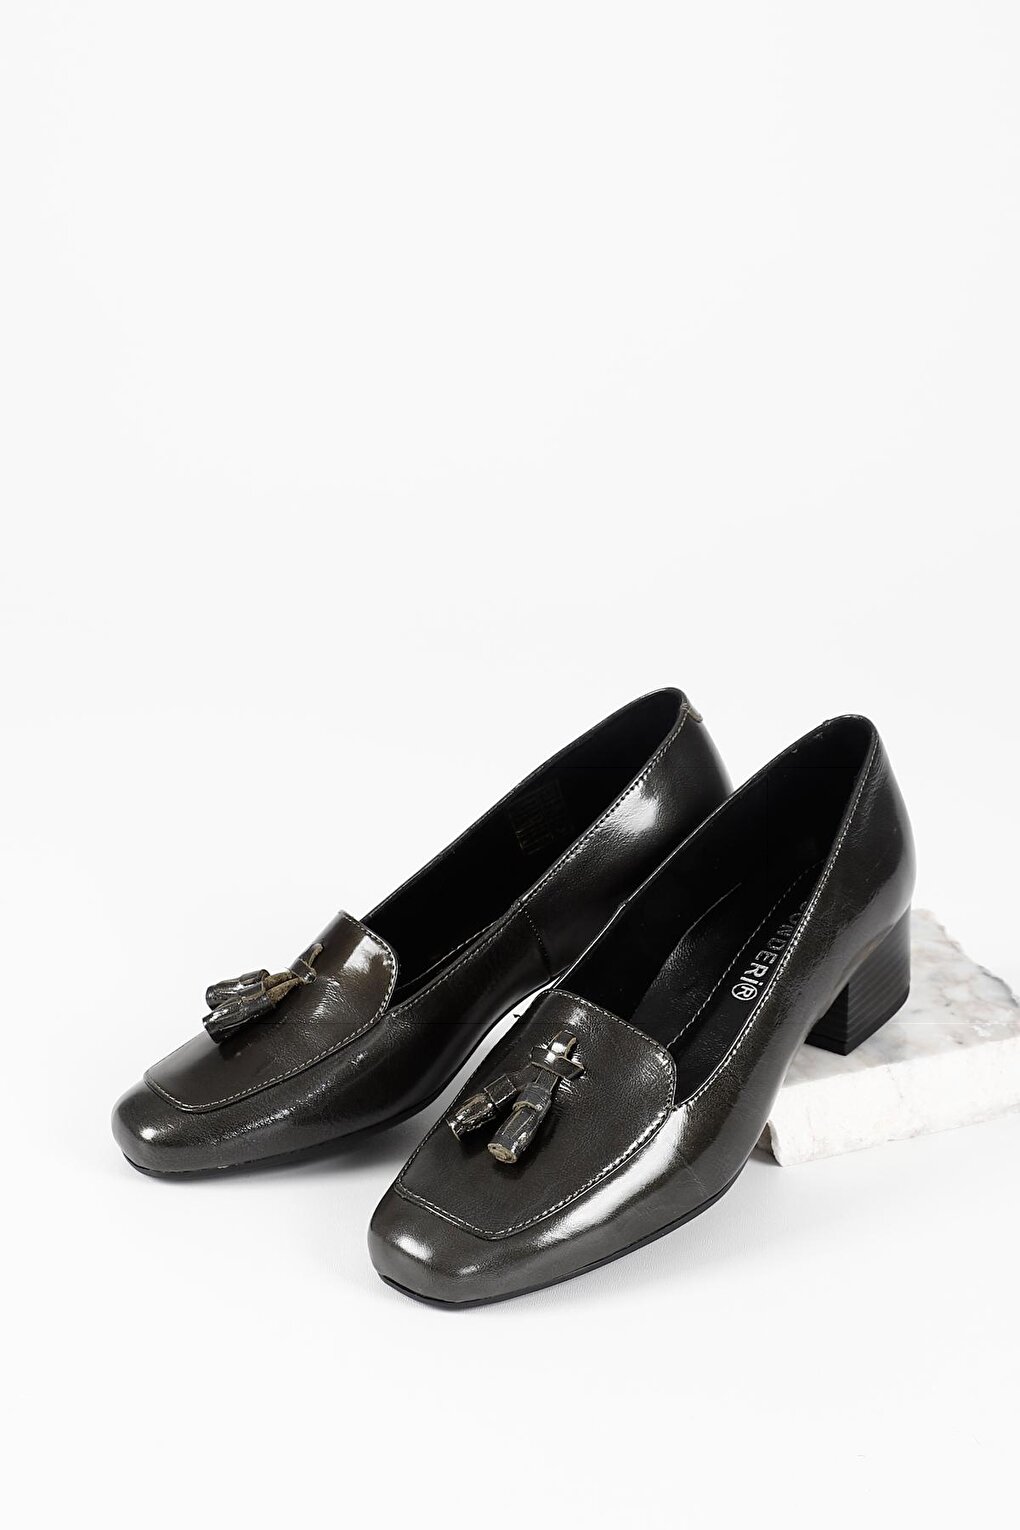 СЕРЫЕ женские туфли из натуральной кожи с тупым носком, на коротком толстом каблуке и с кисточками 13313 GÖNDERİ(R)